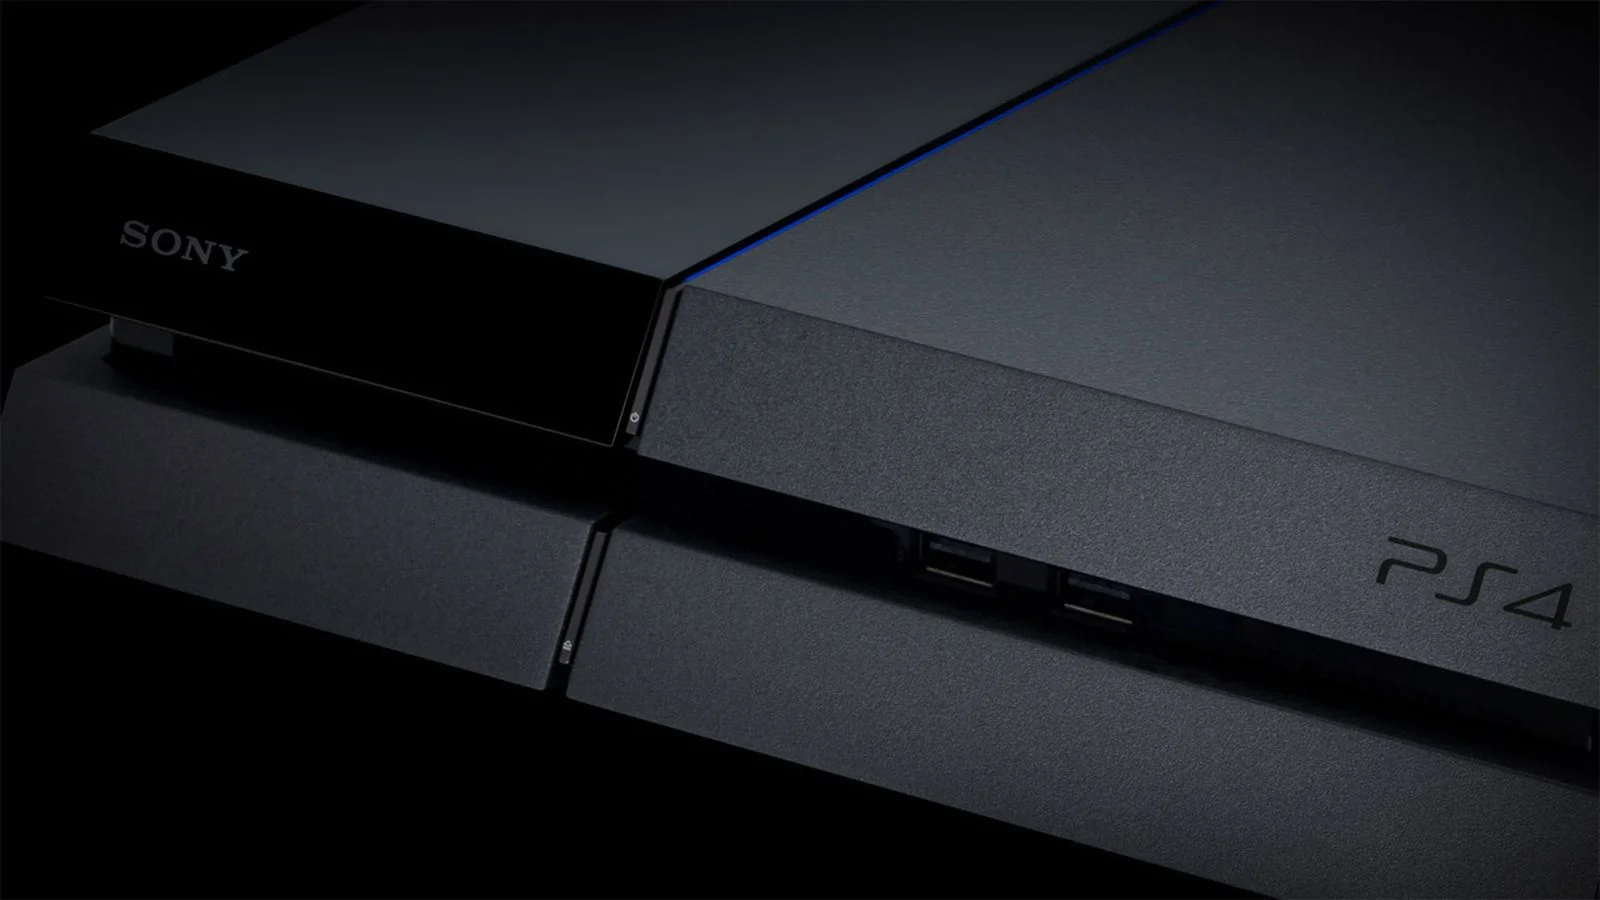 7 сентября, прямо за Apple, Sony представила публике будущее PlayStation. Как ее встретила публика? Узнайте прямо здесь.